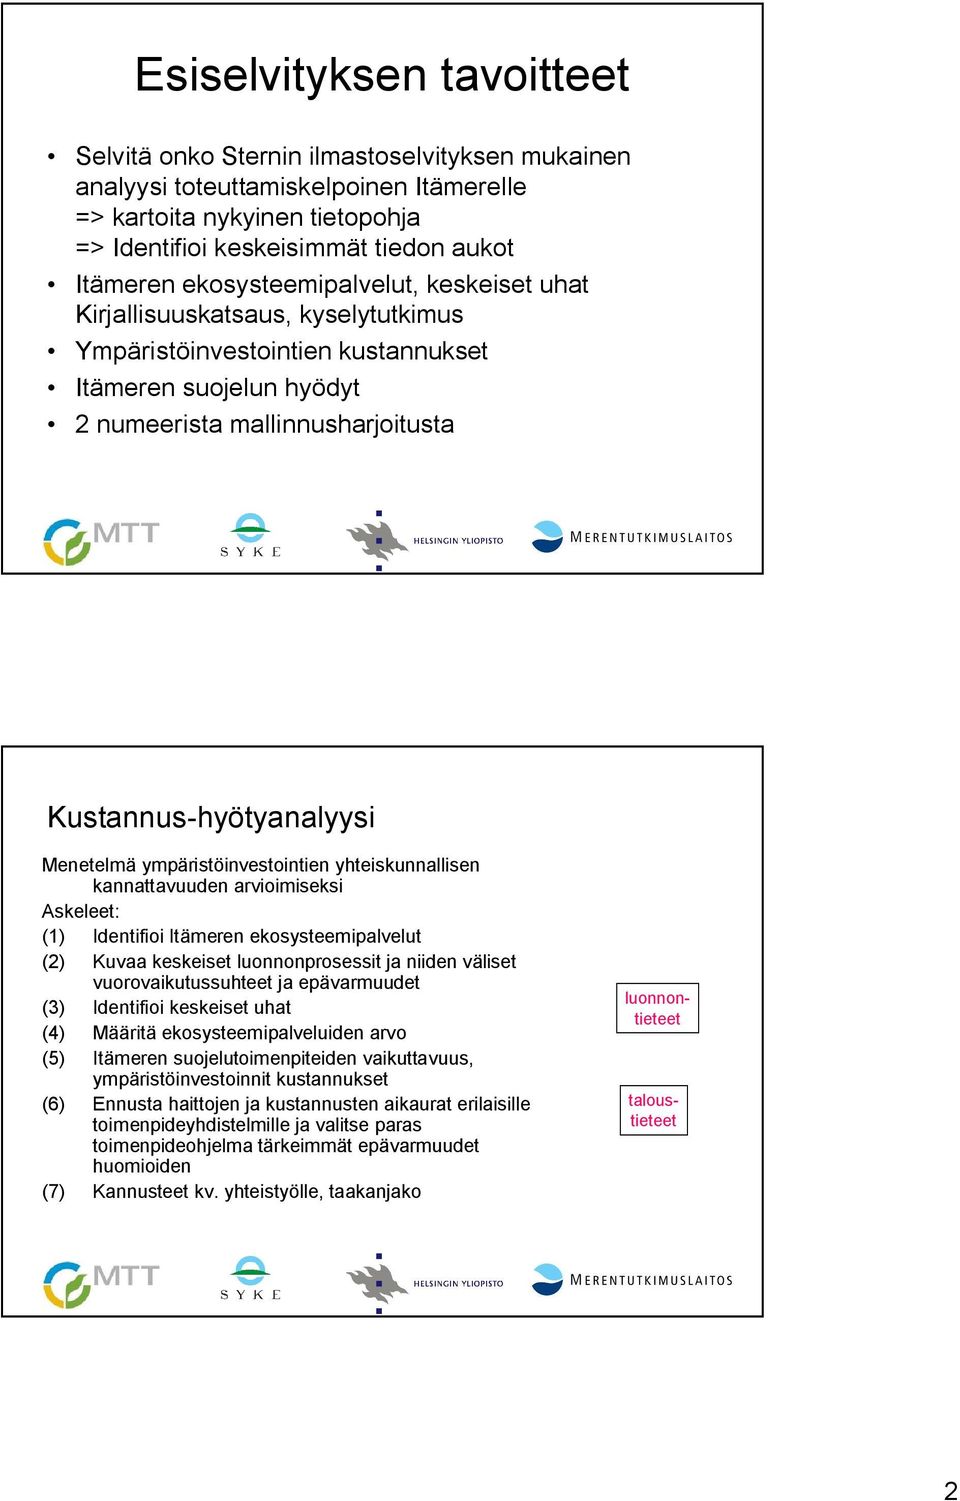 Menetelmä ympäristöinvestointien yhteiskunnallisen kannattavuuden arvioimiseksi Askeleet: (1) Identifioi Itämeren ekosysteemipalvelut (2) Kuvaa keskeiset luonnonprosessit ja niiden väliset